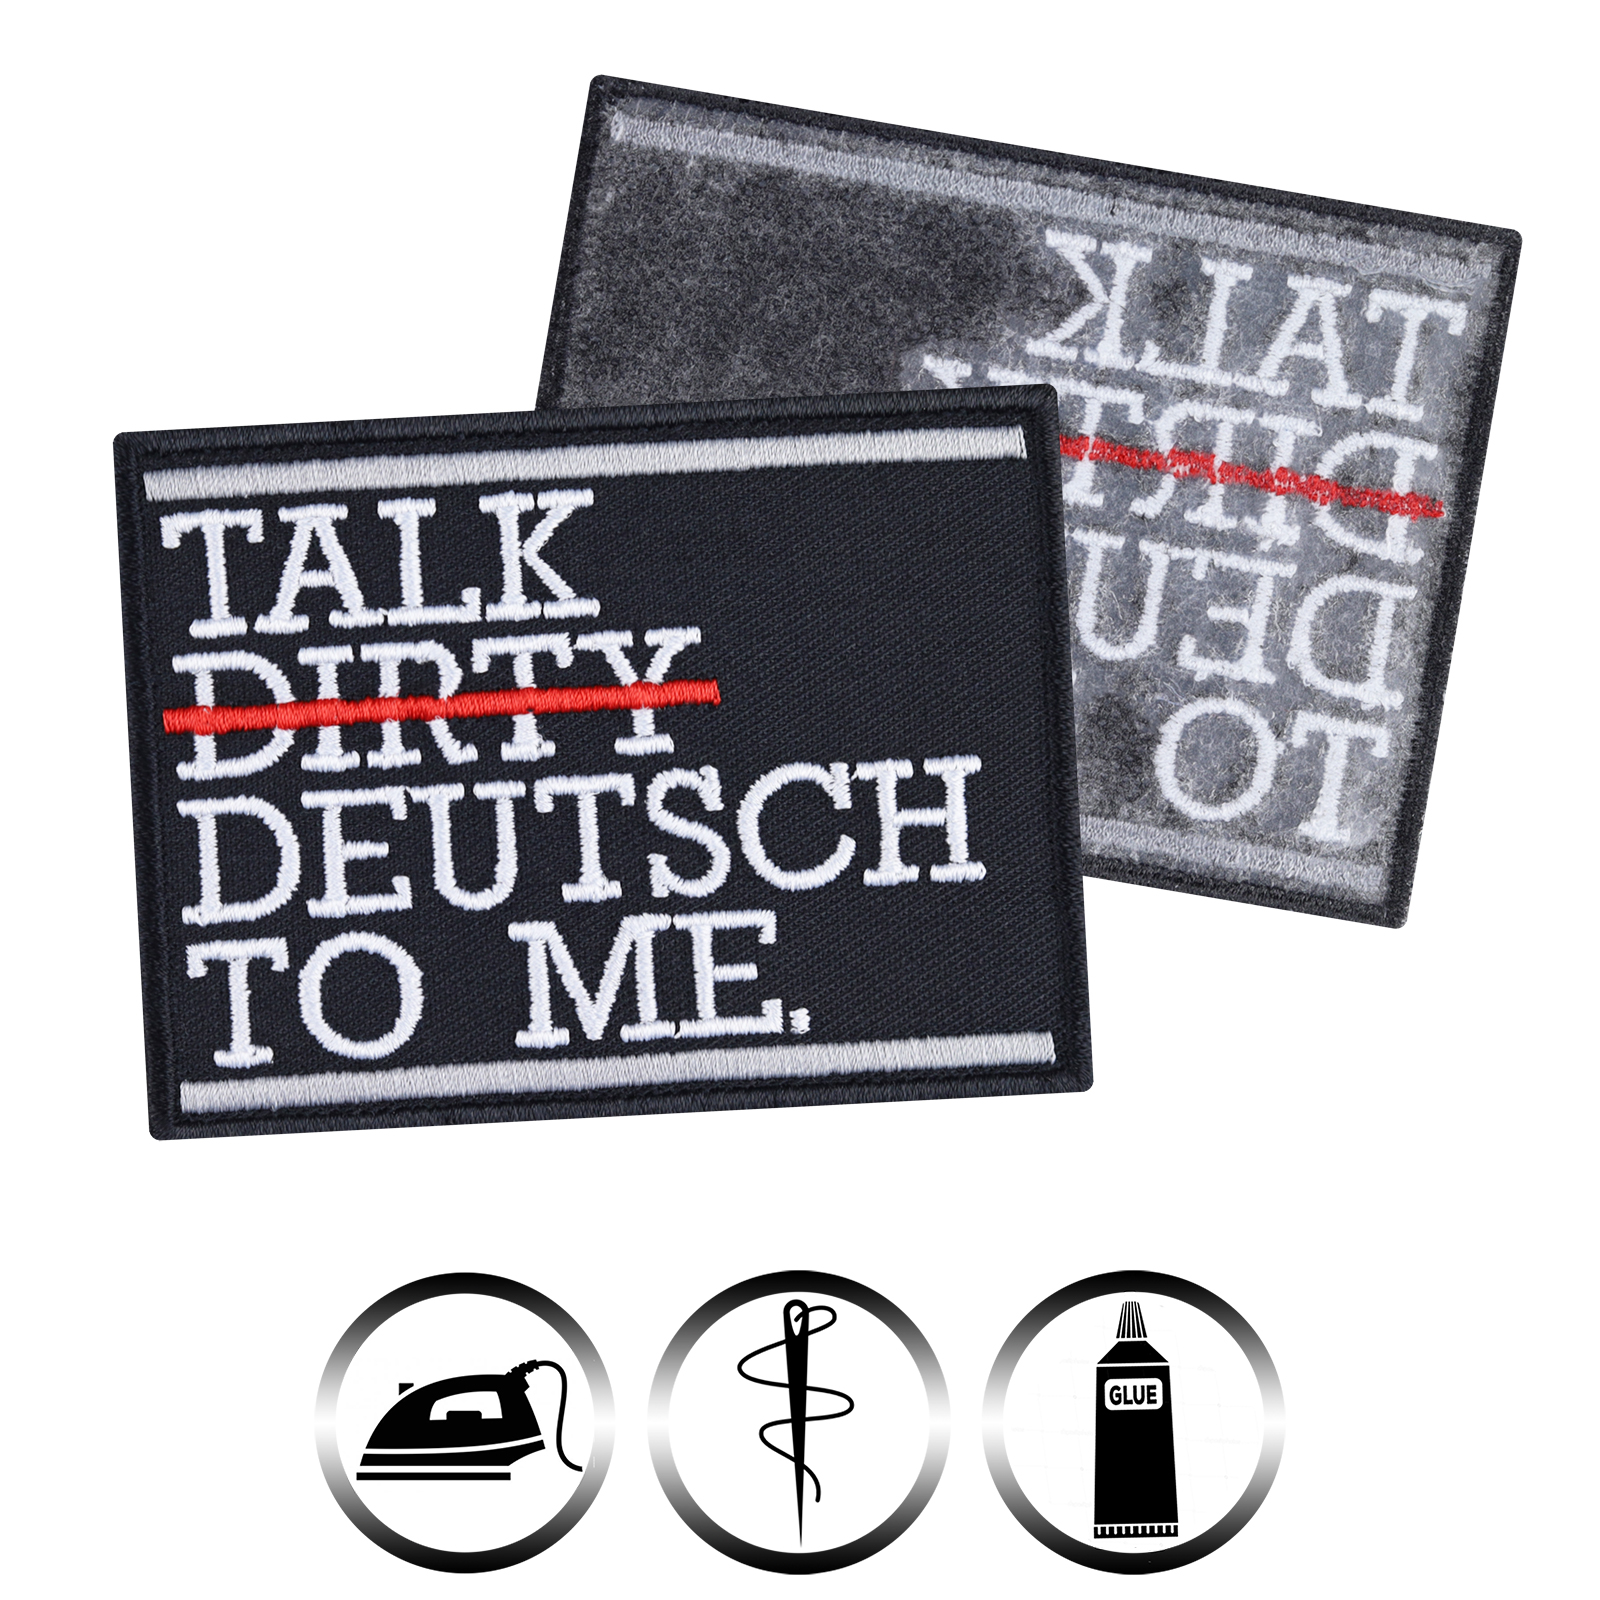 Talk deutsch to me - Patch